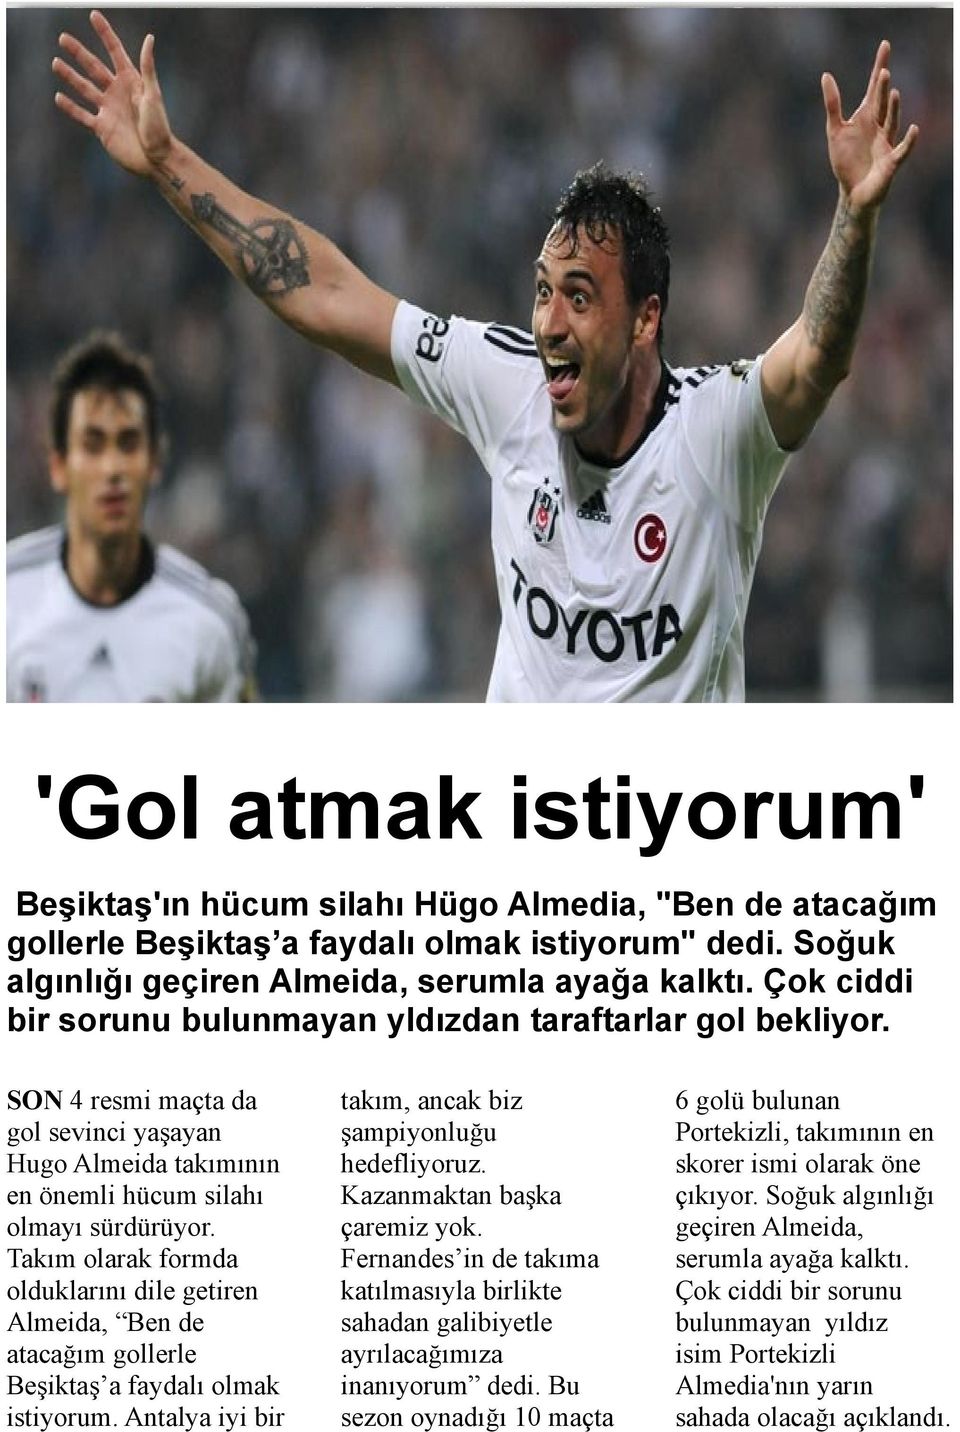 Takım olarak formda olduklarını dile getiren Almeida, Ben de atacağım gollerle Beşiktaş a faydalı olmak istiyorum. Antalya iyi bir takım, ancak biz şampiyonluğu hedefliyoruz.